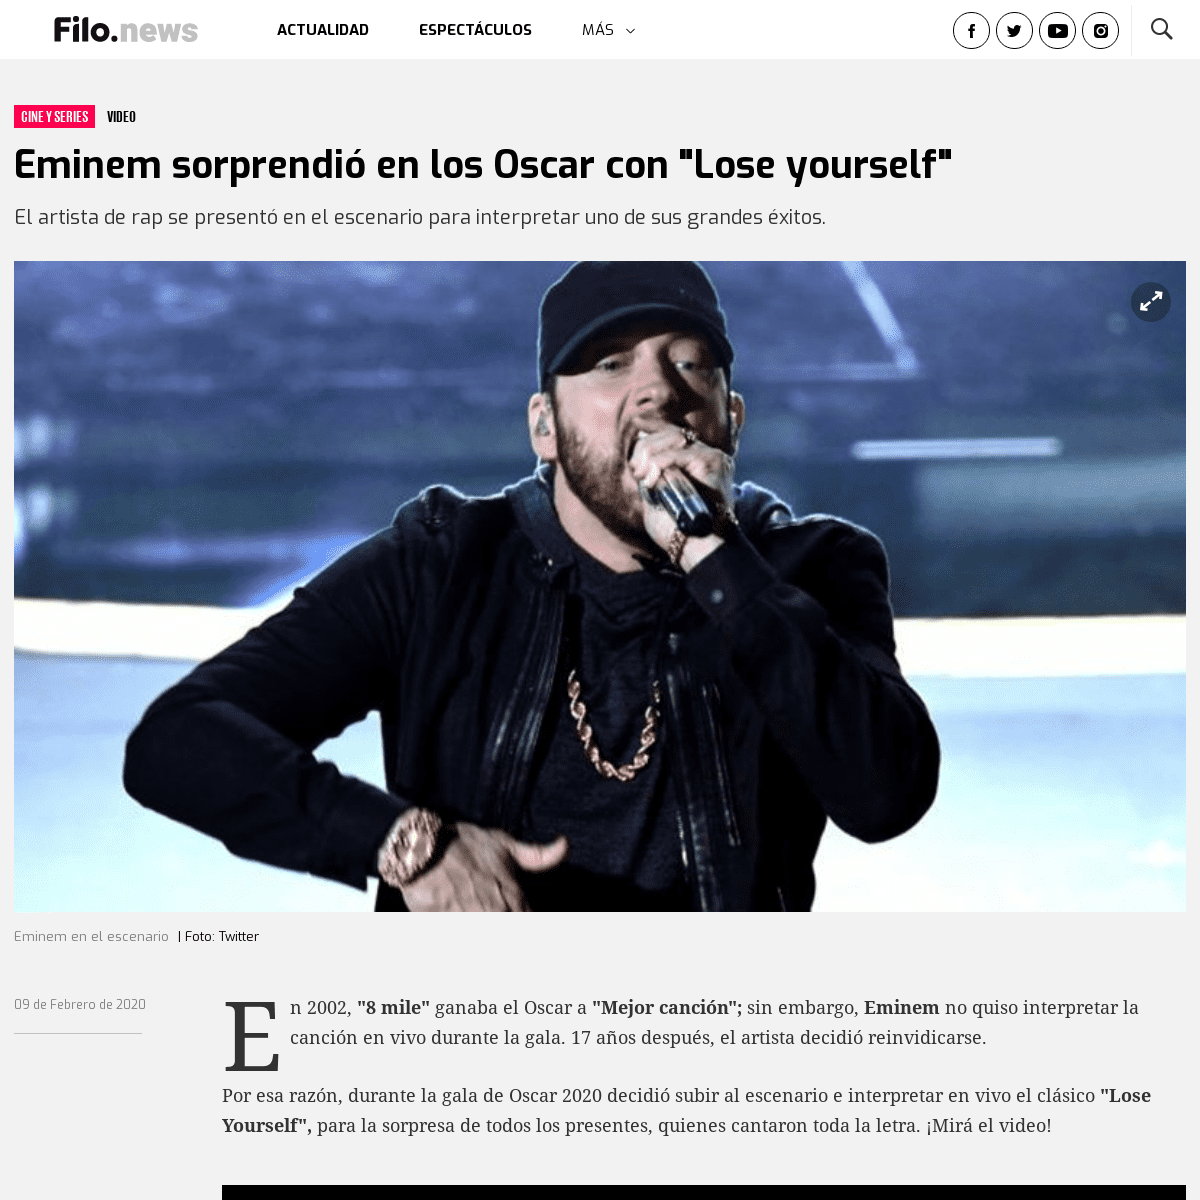 A complete backup of www.filo.news/cine-y-series/Eminem-sorprendio-en-los-Oscars-con-Lose-yourself-20200209-0028.html